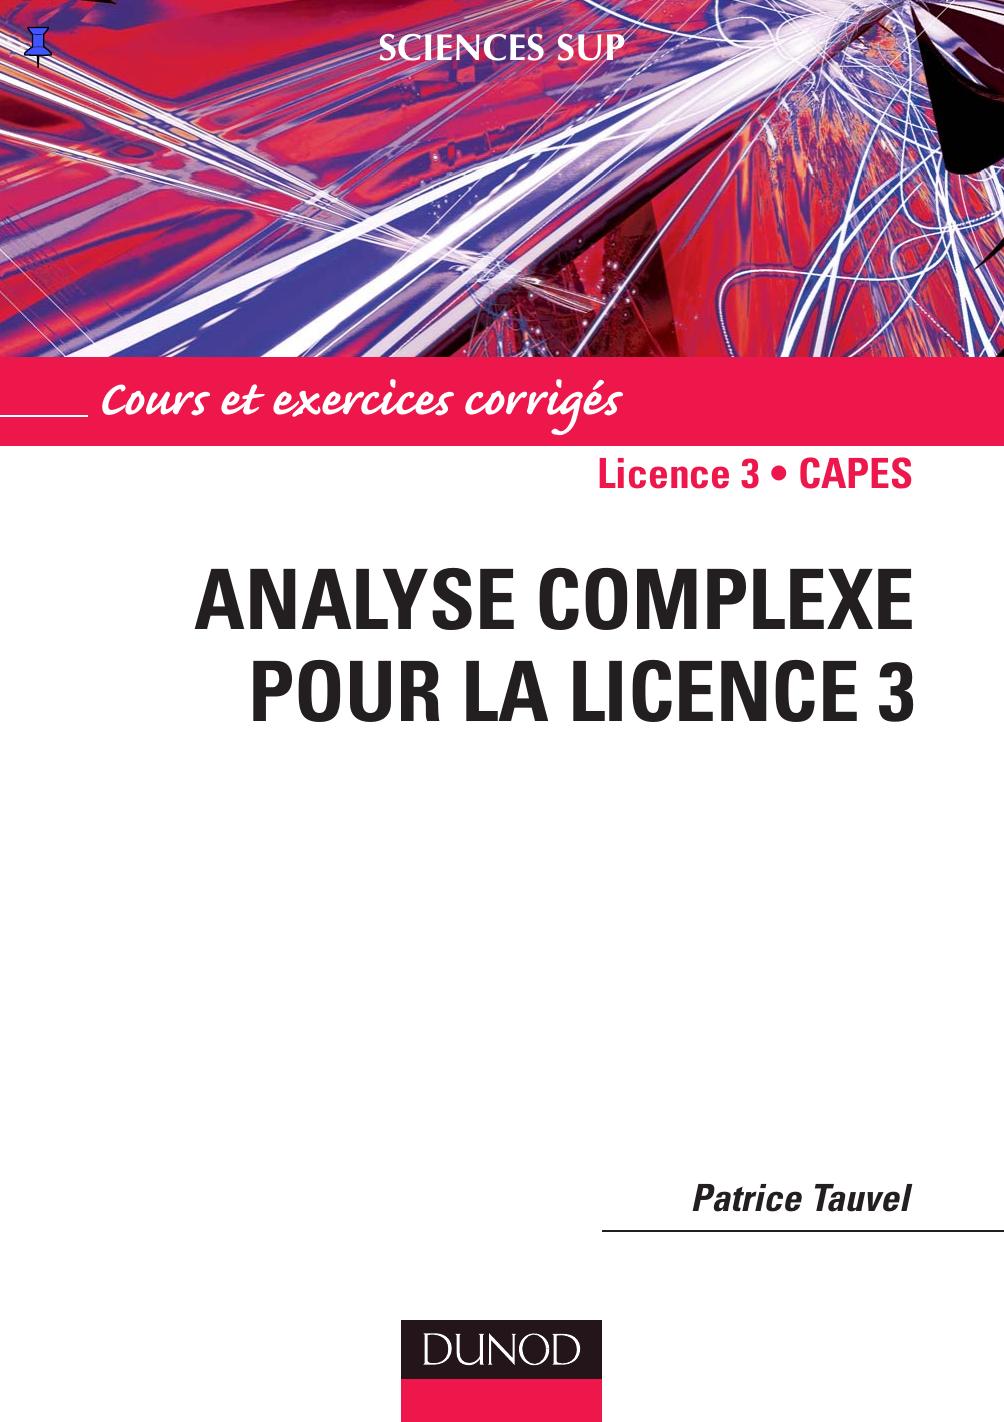 Analyse complexe pour la licence 3: cours et exercices corrigés